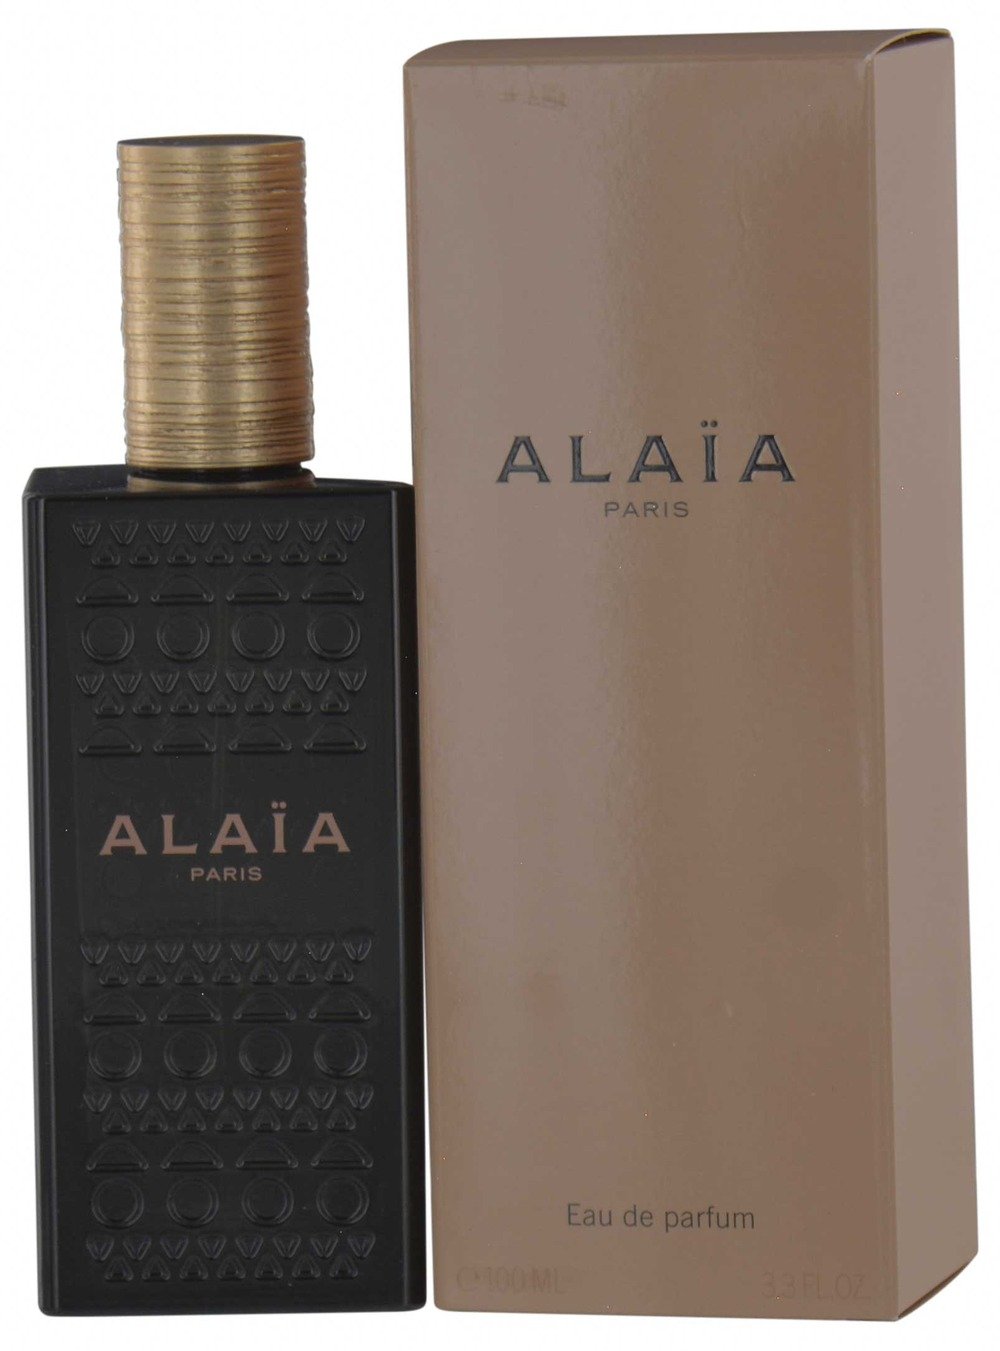 Alaia Eau De Parfum by Azzedine Alaia Fragrance Review | Eau Talk - The  Official FragranceNet.com Blog